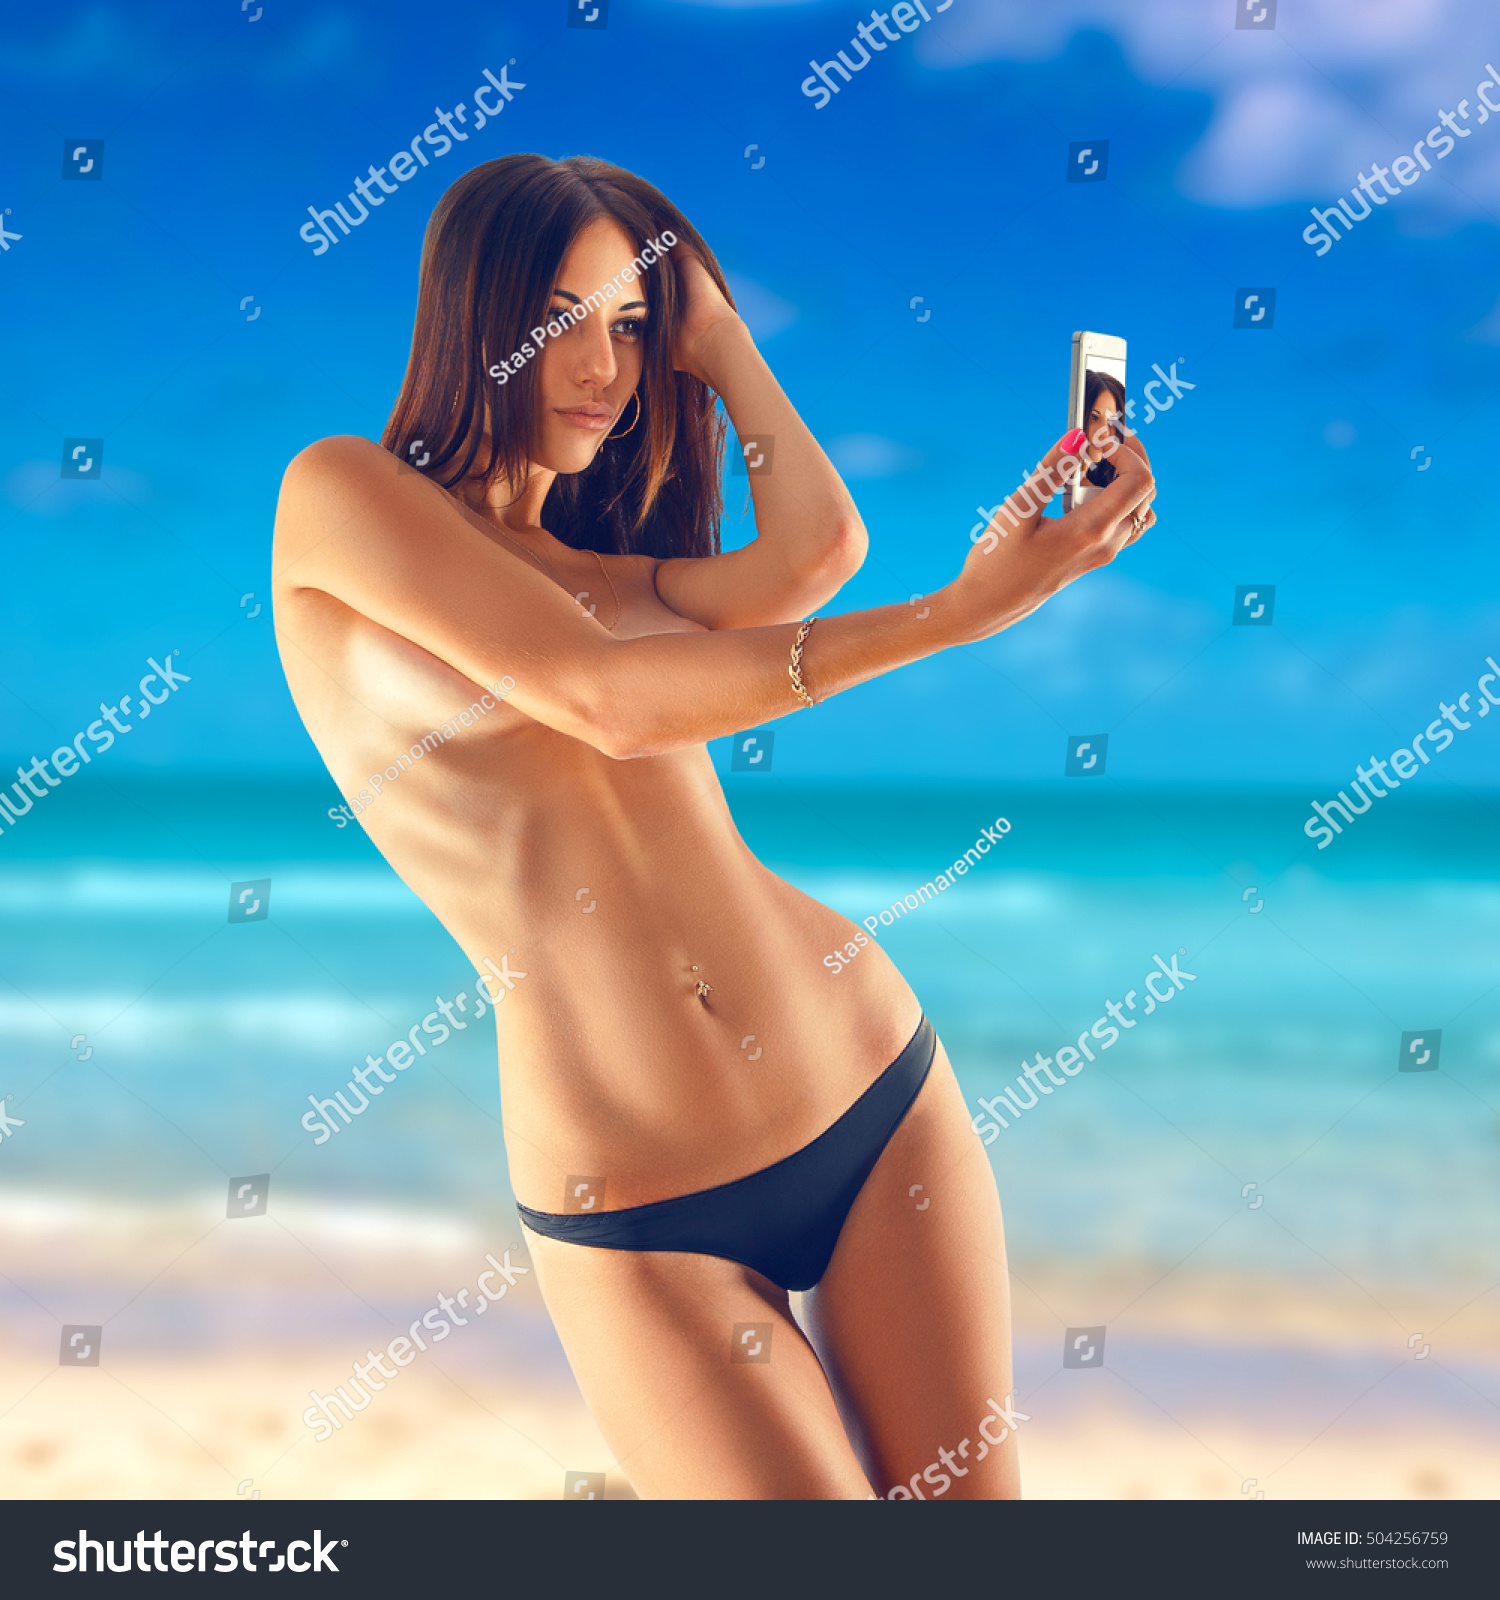 Nude Selfies Outdoors